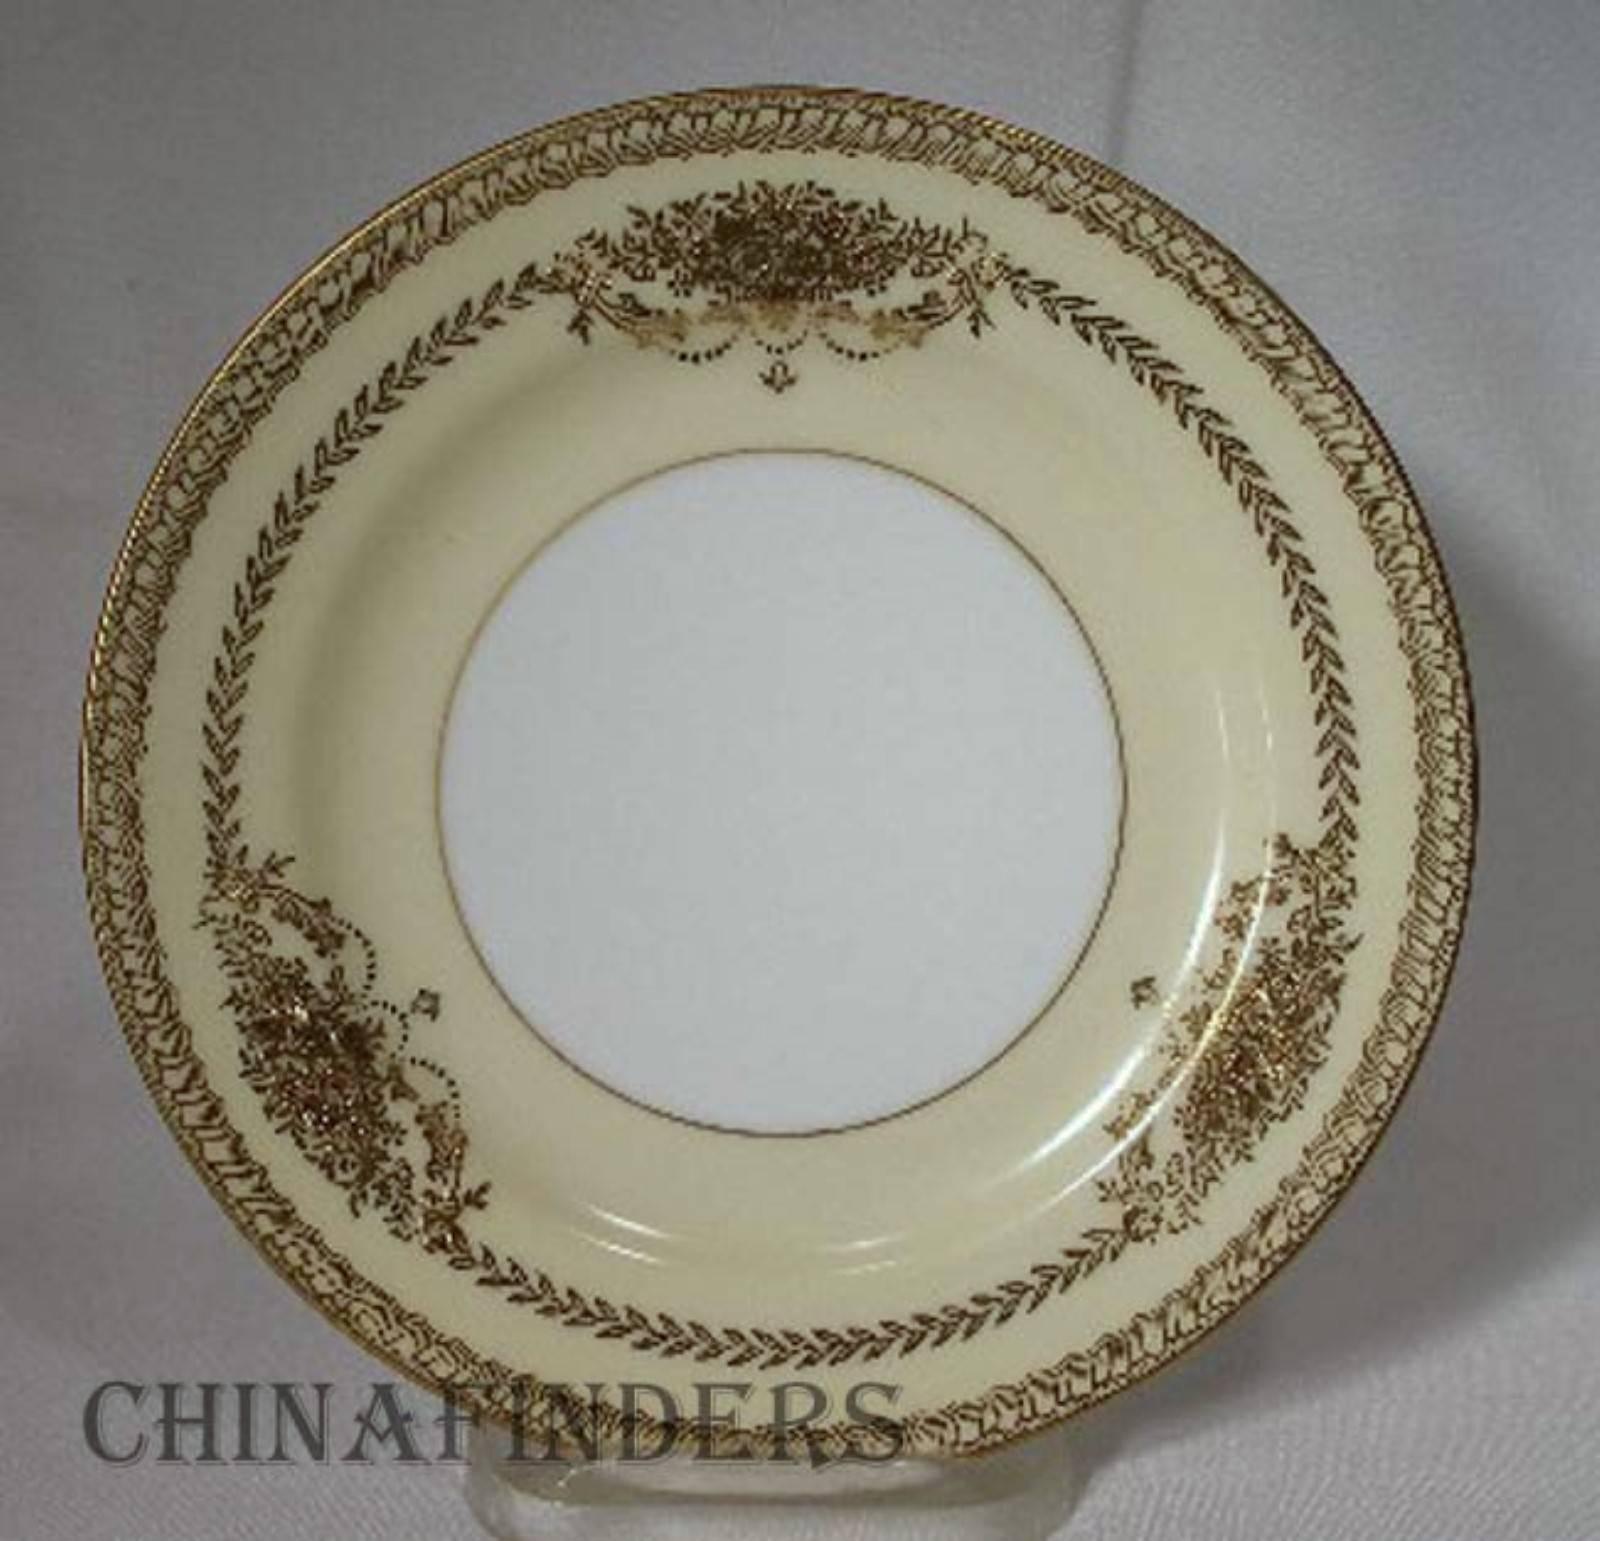 vintage noritake china patterns with silver trim